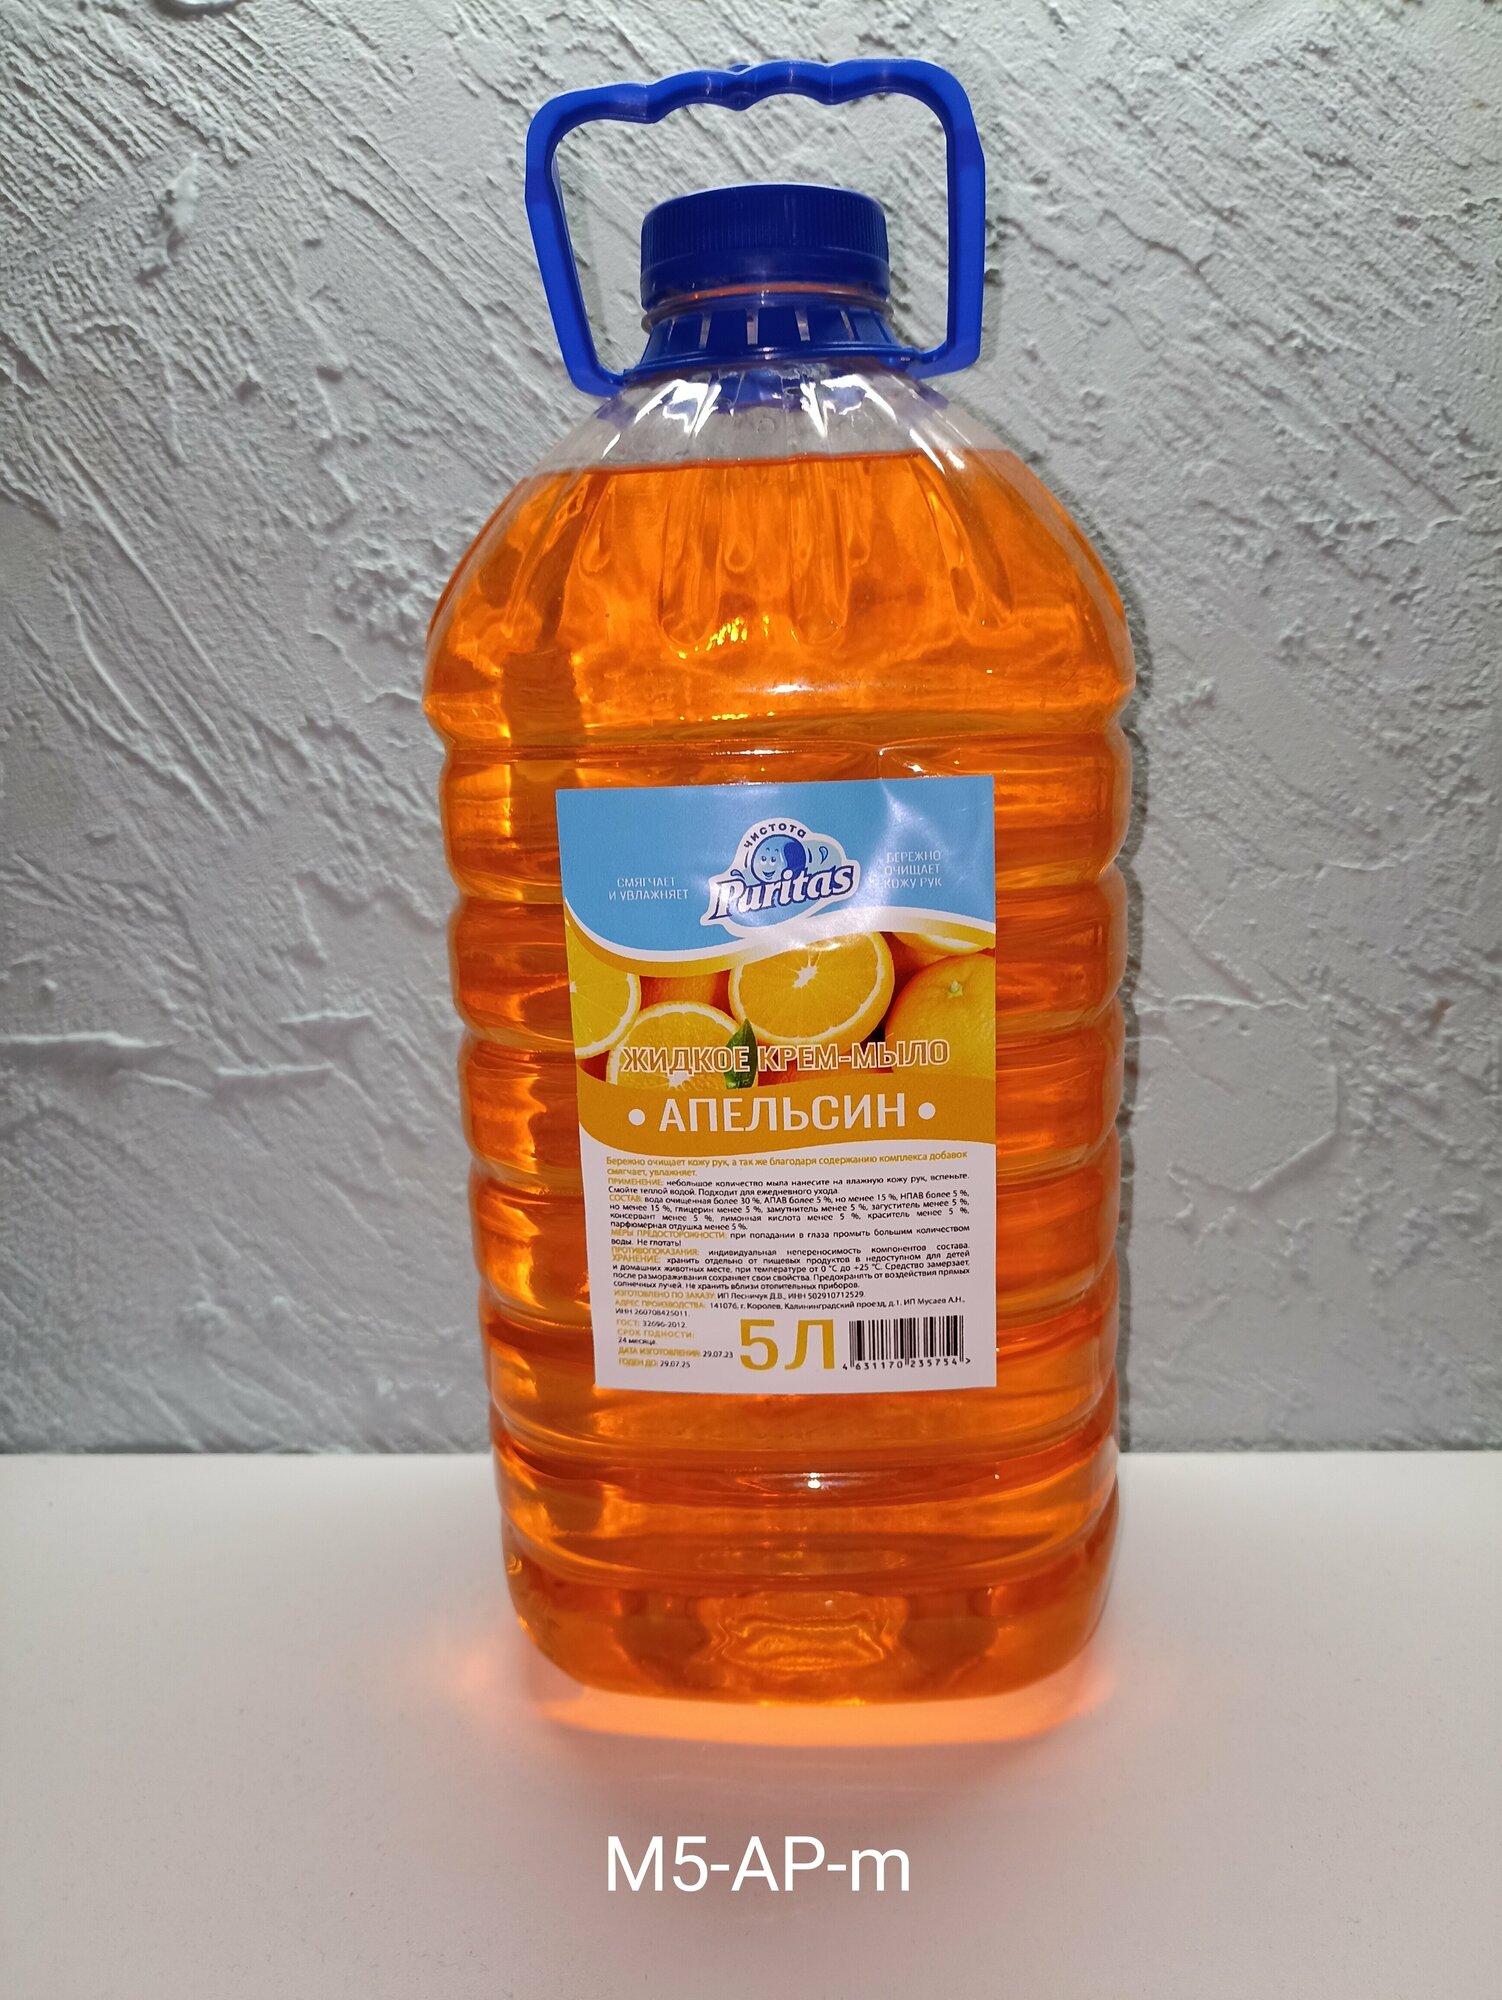 Мыло жидкое для рук Puritas"Апельсин" мягкая канистра 5 литров